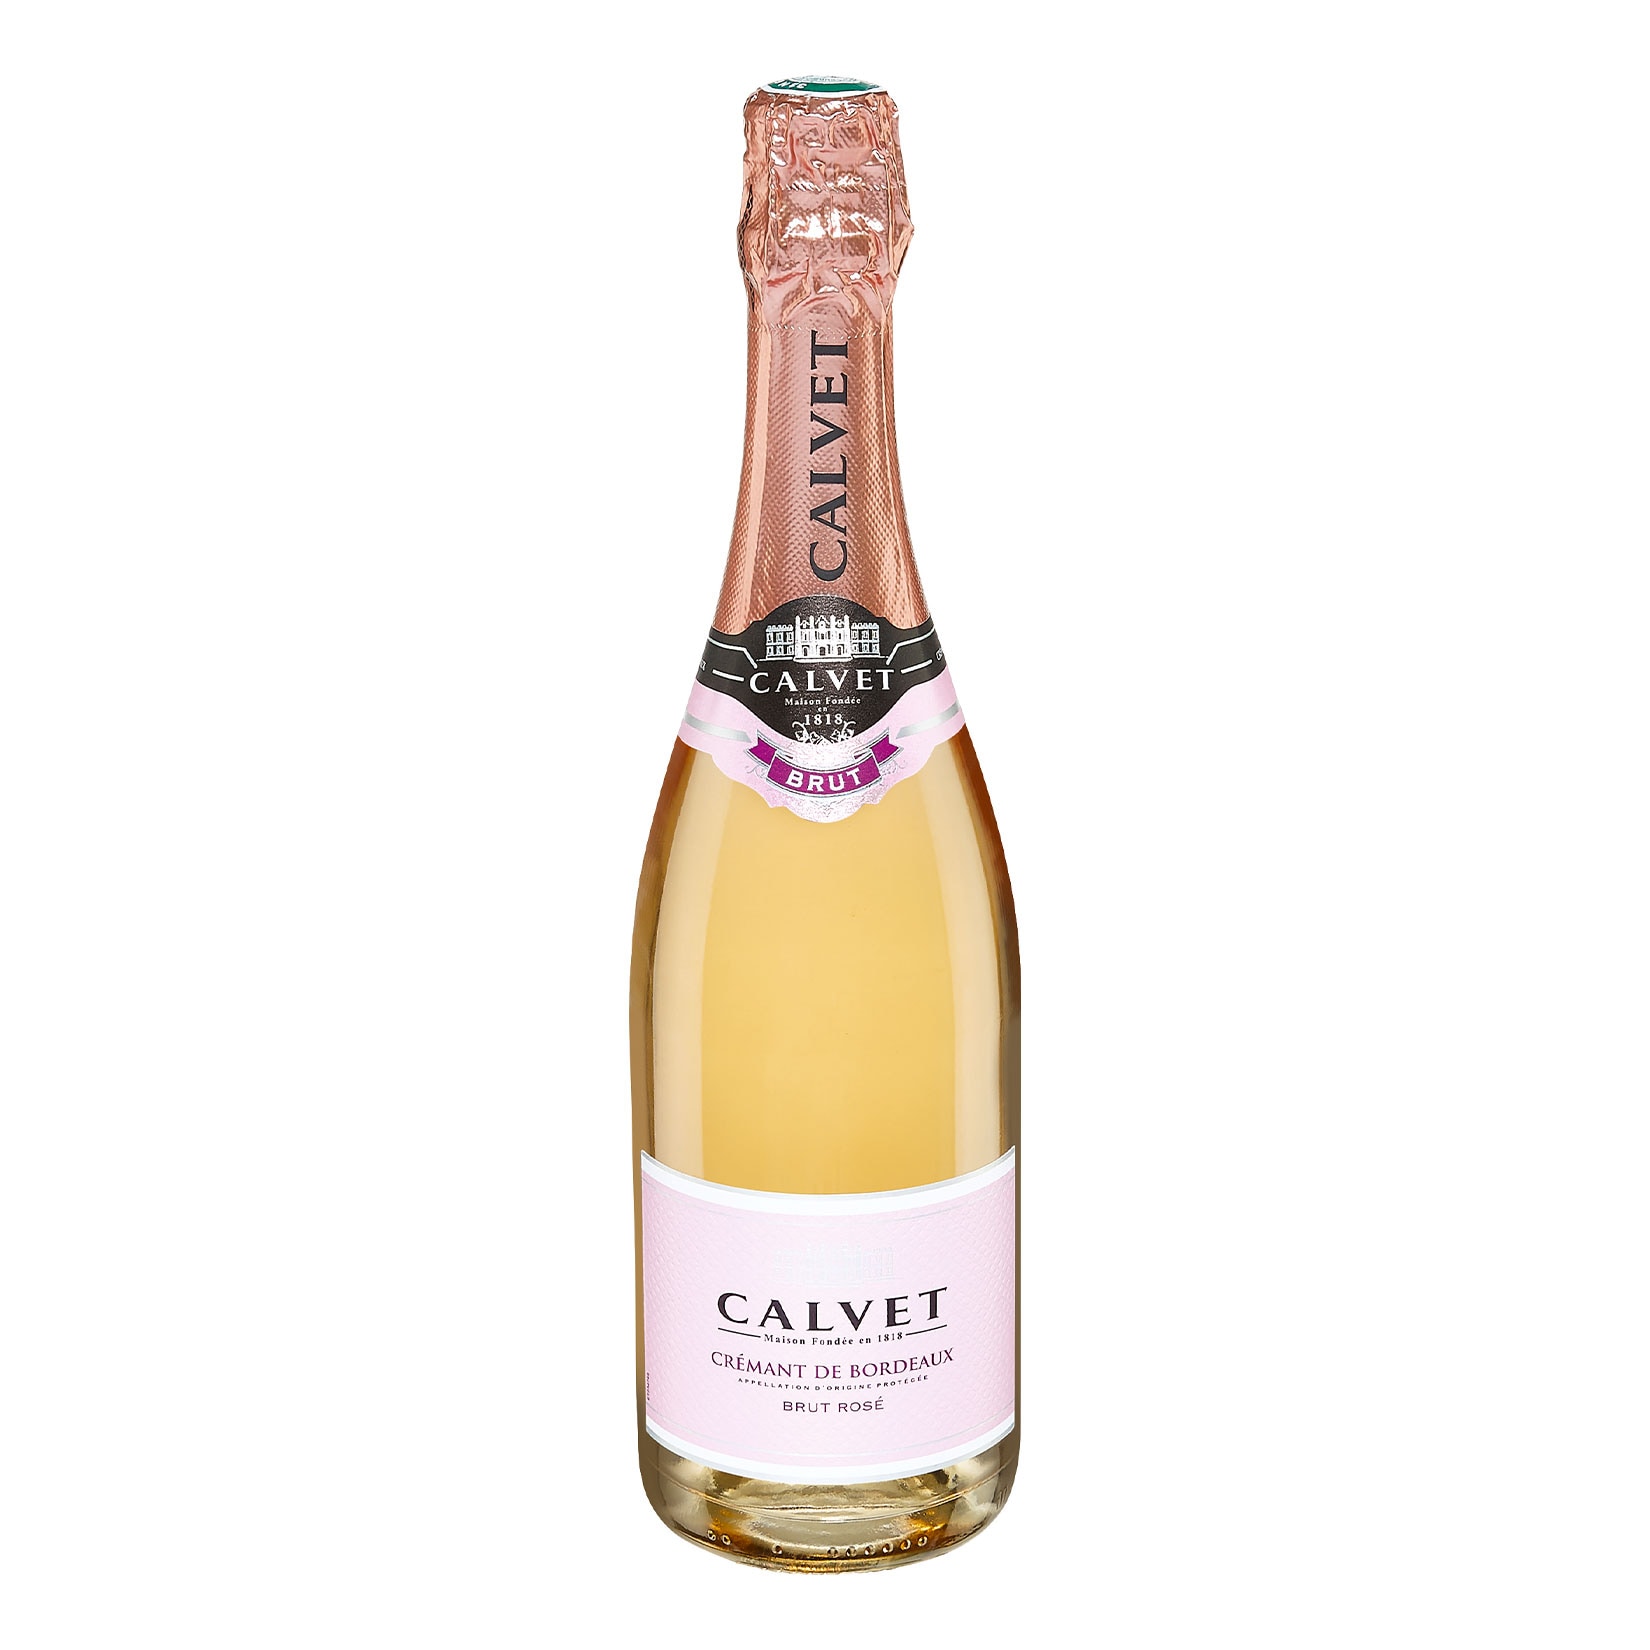 Jetzt Crémant Calvet Bordeaux online ➡️ de rosé kaufen